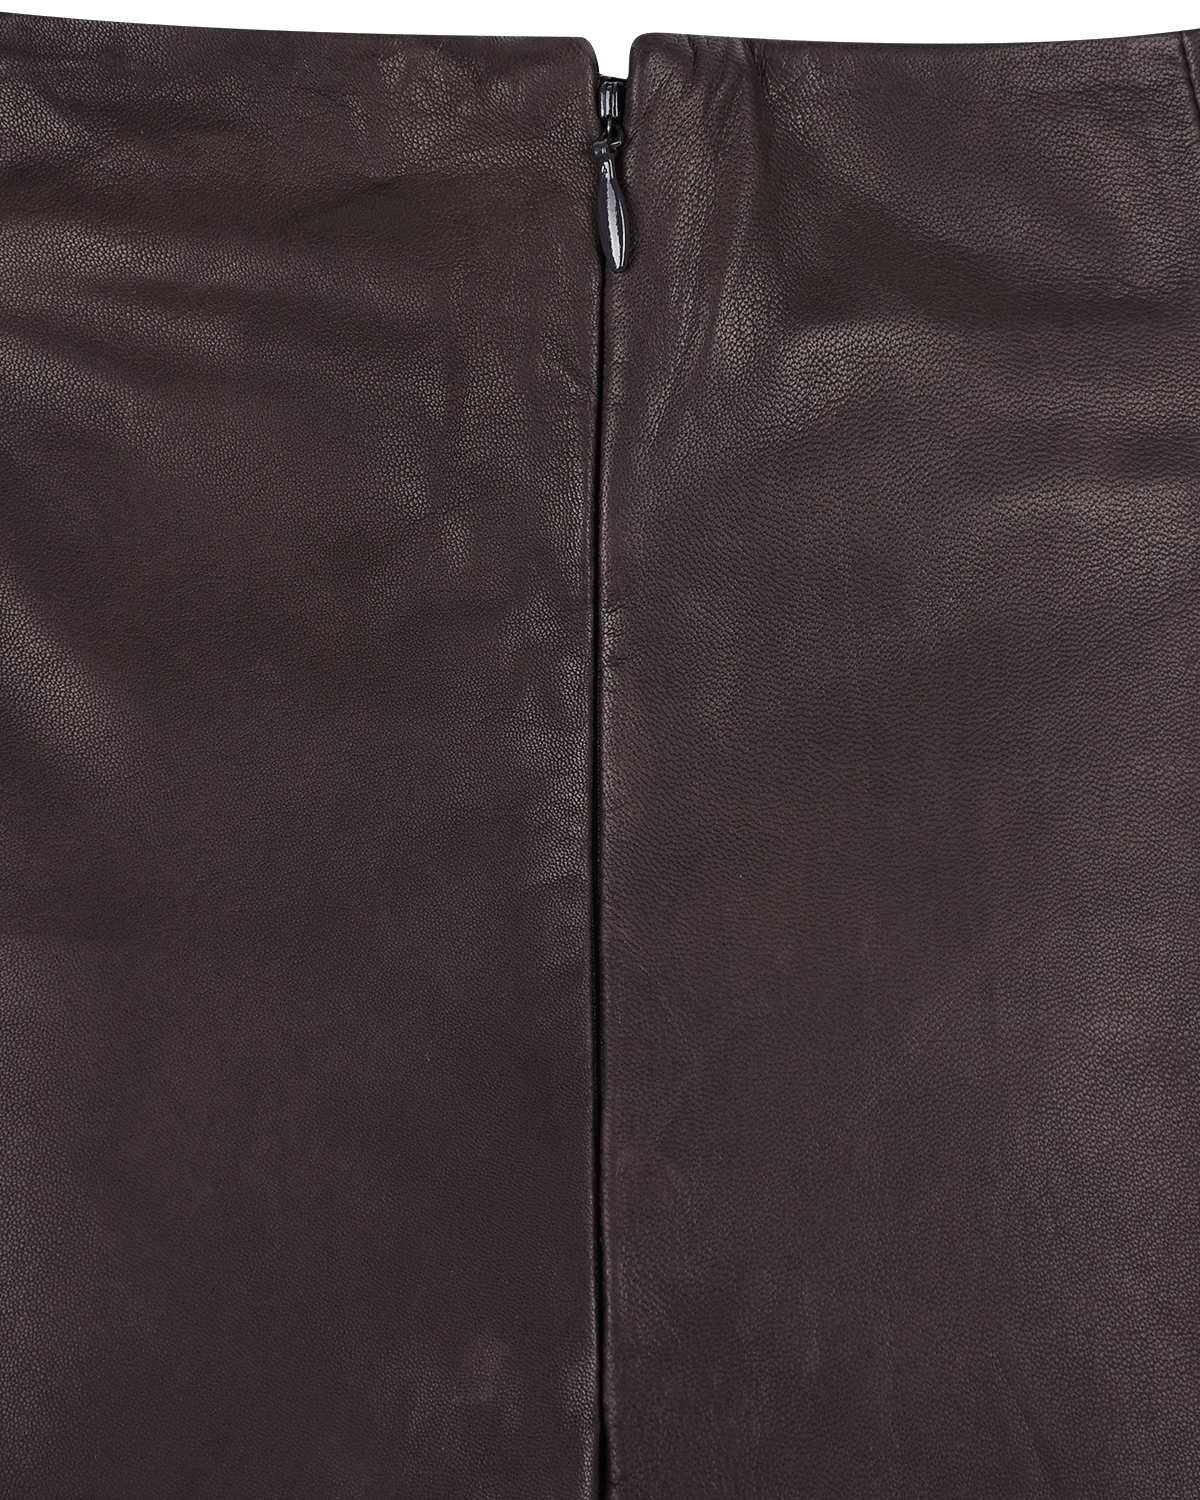 Черная кожаная юбка Parosh, размер 40, цвет коричневый - фото 6